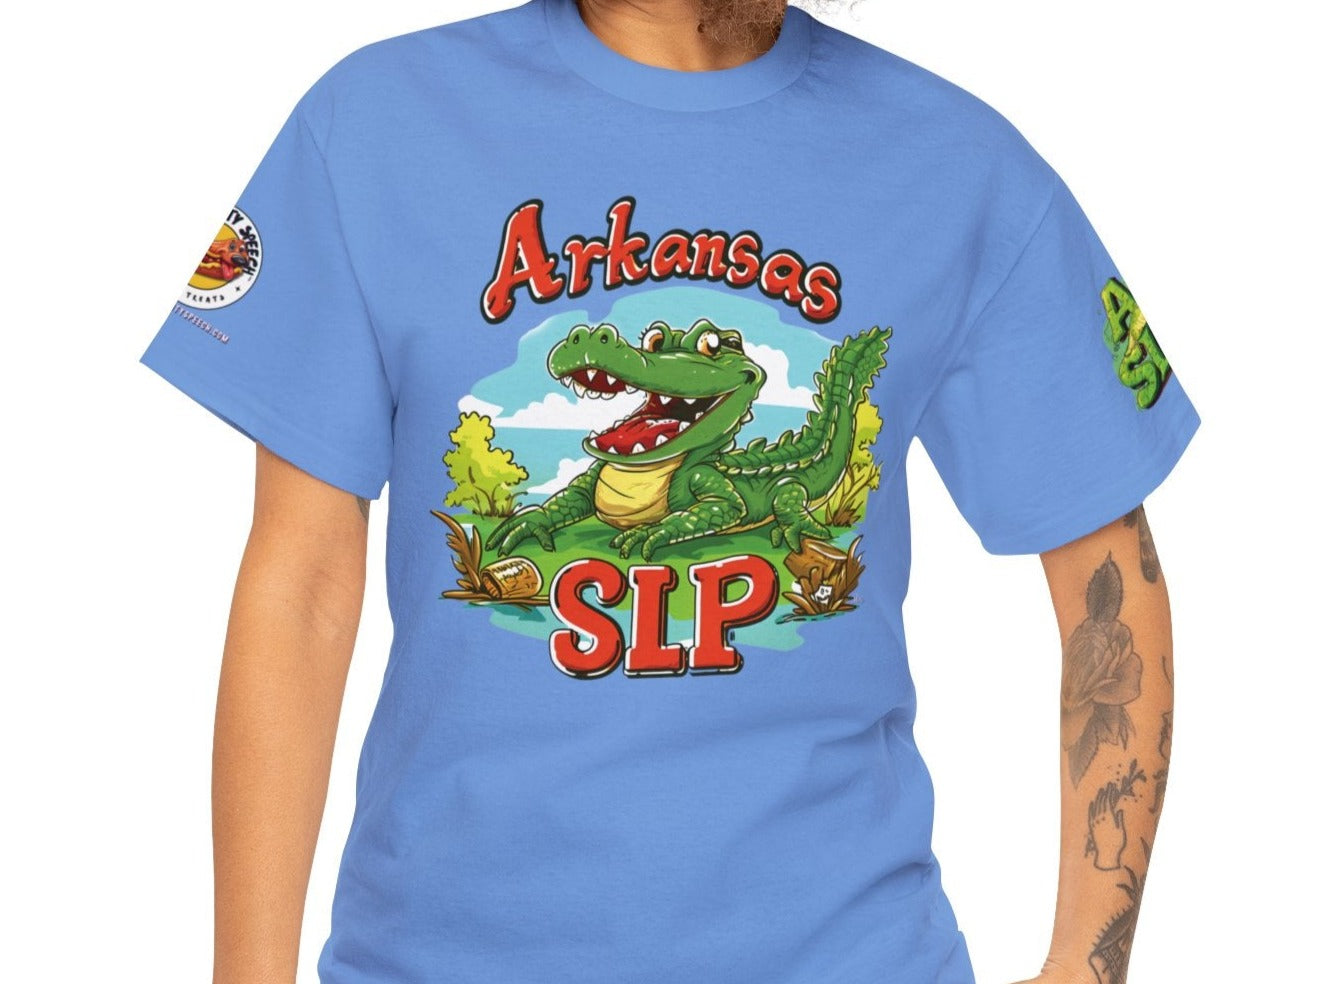 Arkansas SLP #1 Speech Therapy Shirt